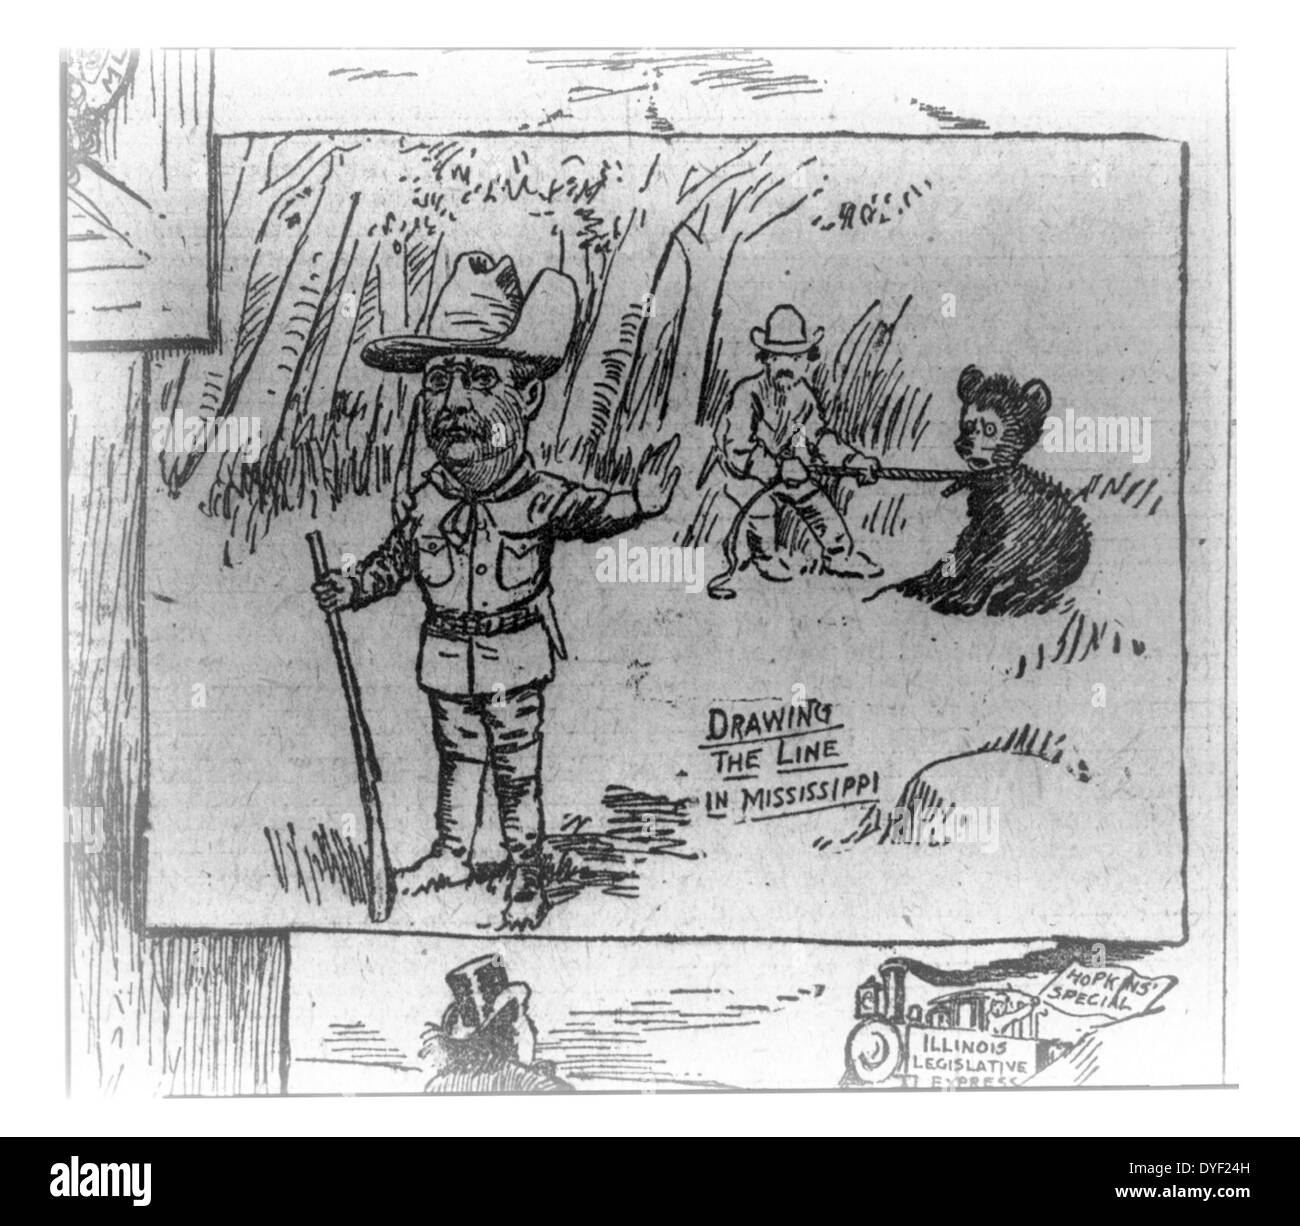 Die Linie zeichnen in Mississippi von Clifford Kennedy Berryman, 1869-1949, Künstler, veröffentlicht 1902. Foto reproduziert eine Zeitung Zeichentrickfilm in der Washington Post. Die Karikatur ist ein Detail aus einer Serie namens 'The Passing Show" über angebliche Präsident Theodore Roosevelt die Weigerung eine verkettete Bären zu schießen, während eines Jagdausflugs in Mississippi. Der kleine Bär, Bärchen, wurde so populär, dass Berryman ihn häufig in späteren Cartoons zu vielen verschiedenen Themen. Obwohl Berryman geholfen, die Vereinigung von Teddy Roosevelt mit Bären zu popularisieren, tat er das Spielzeug Teddybären nicht erfunden. Stockfoto